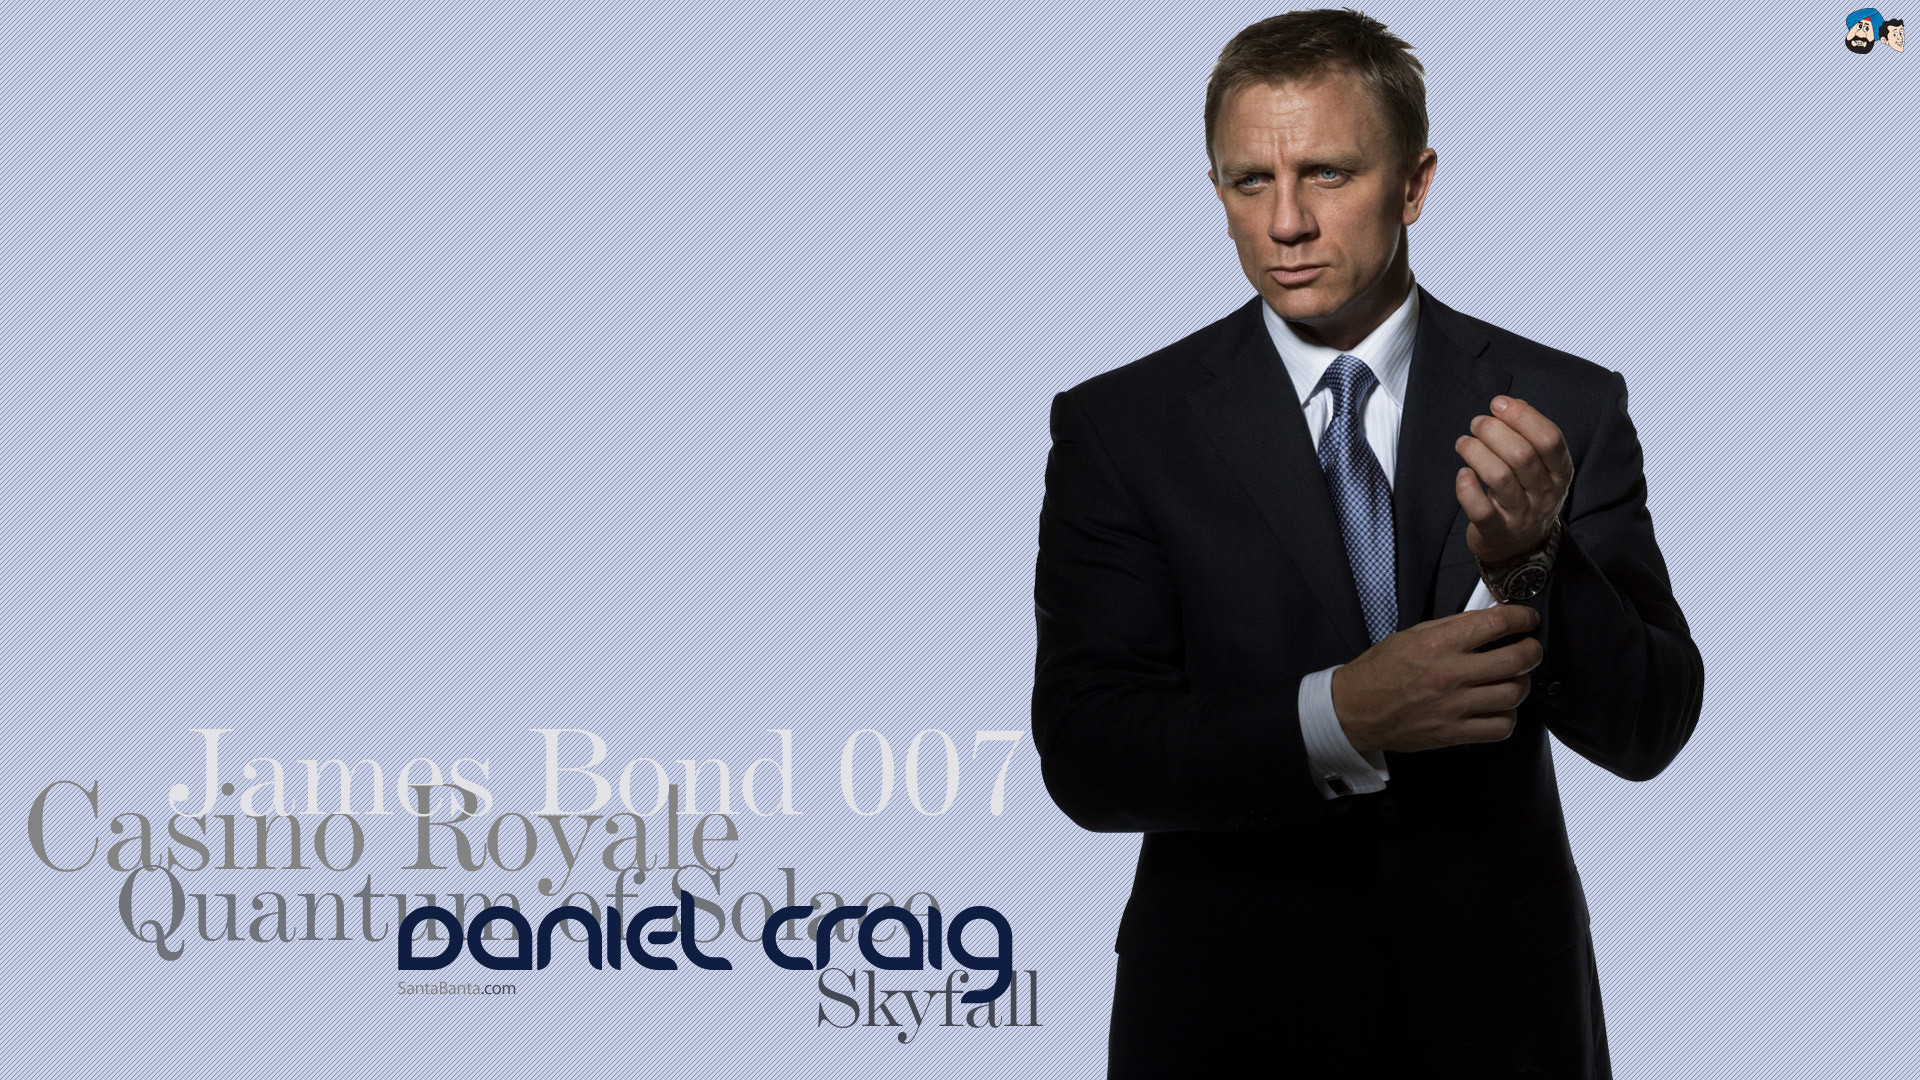 1920x1080 James Bond Wallpaper Daniel Craig James bond wallpaper danielDaniel Craig  James Bond Casino Royale Wallpaper